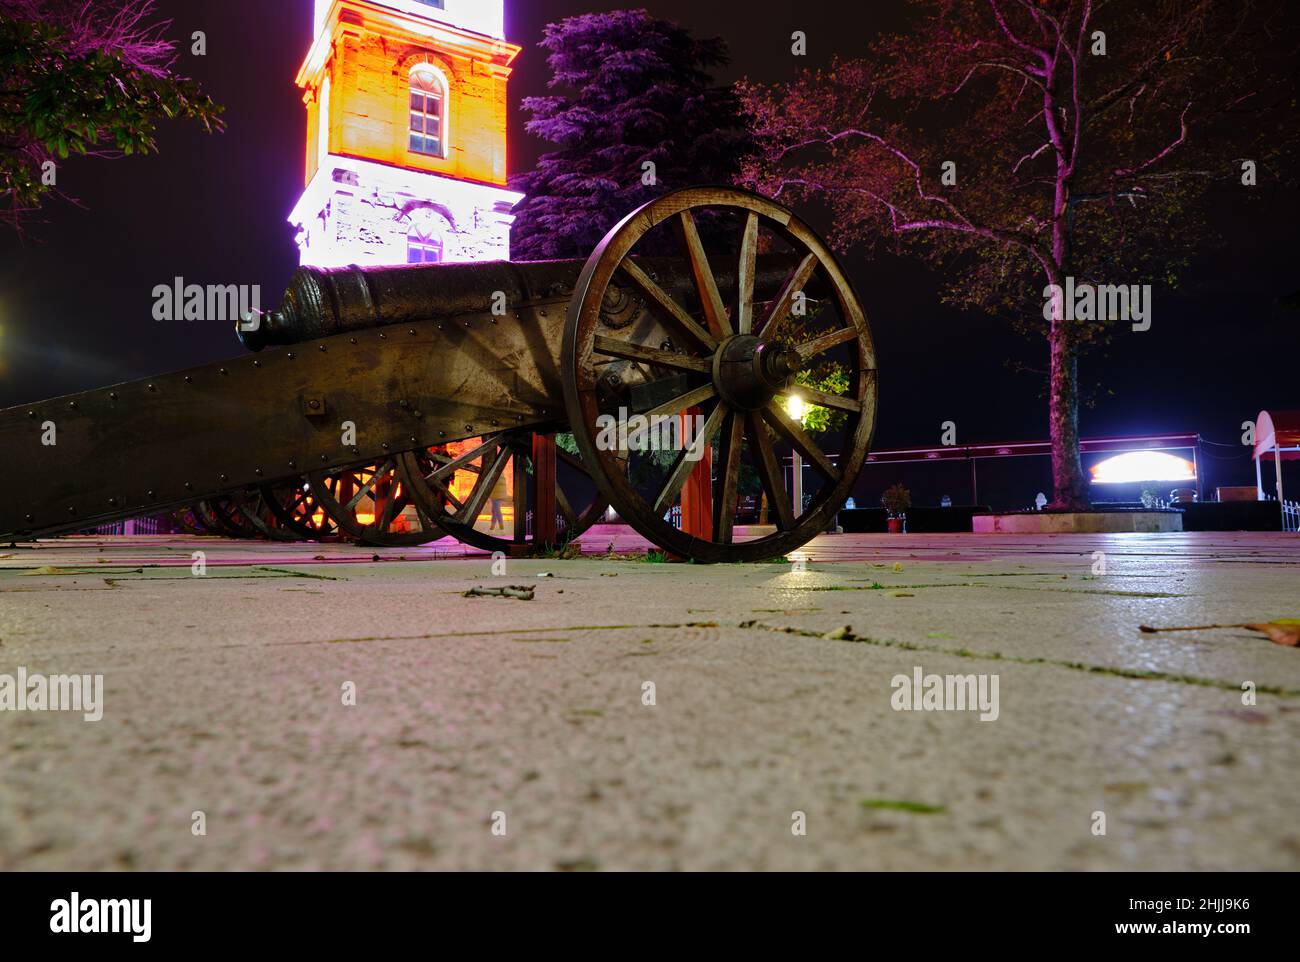 Foto notturna a Bursa, piazza Tophane, antica pistola foto ad angolo basso della torre dell'orologio illuminata. Foto Stock